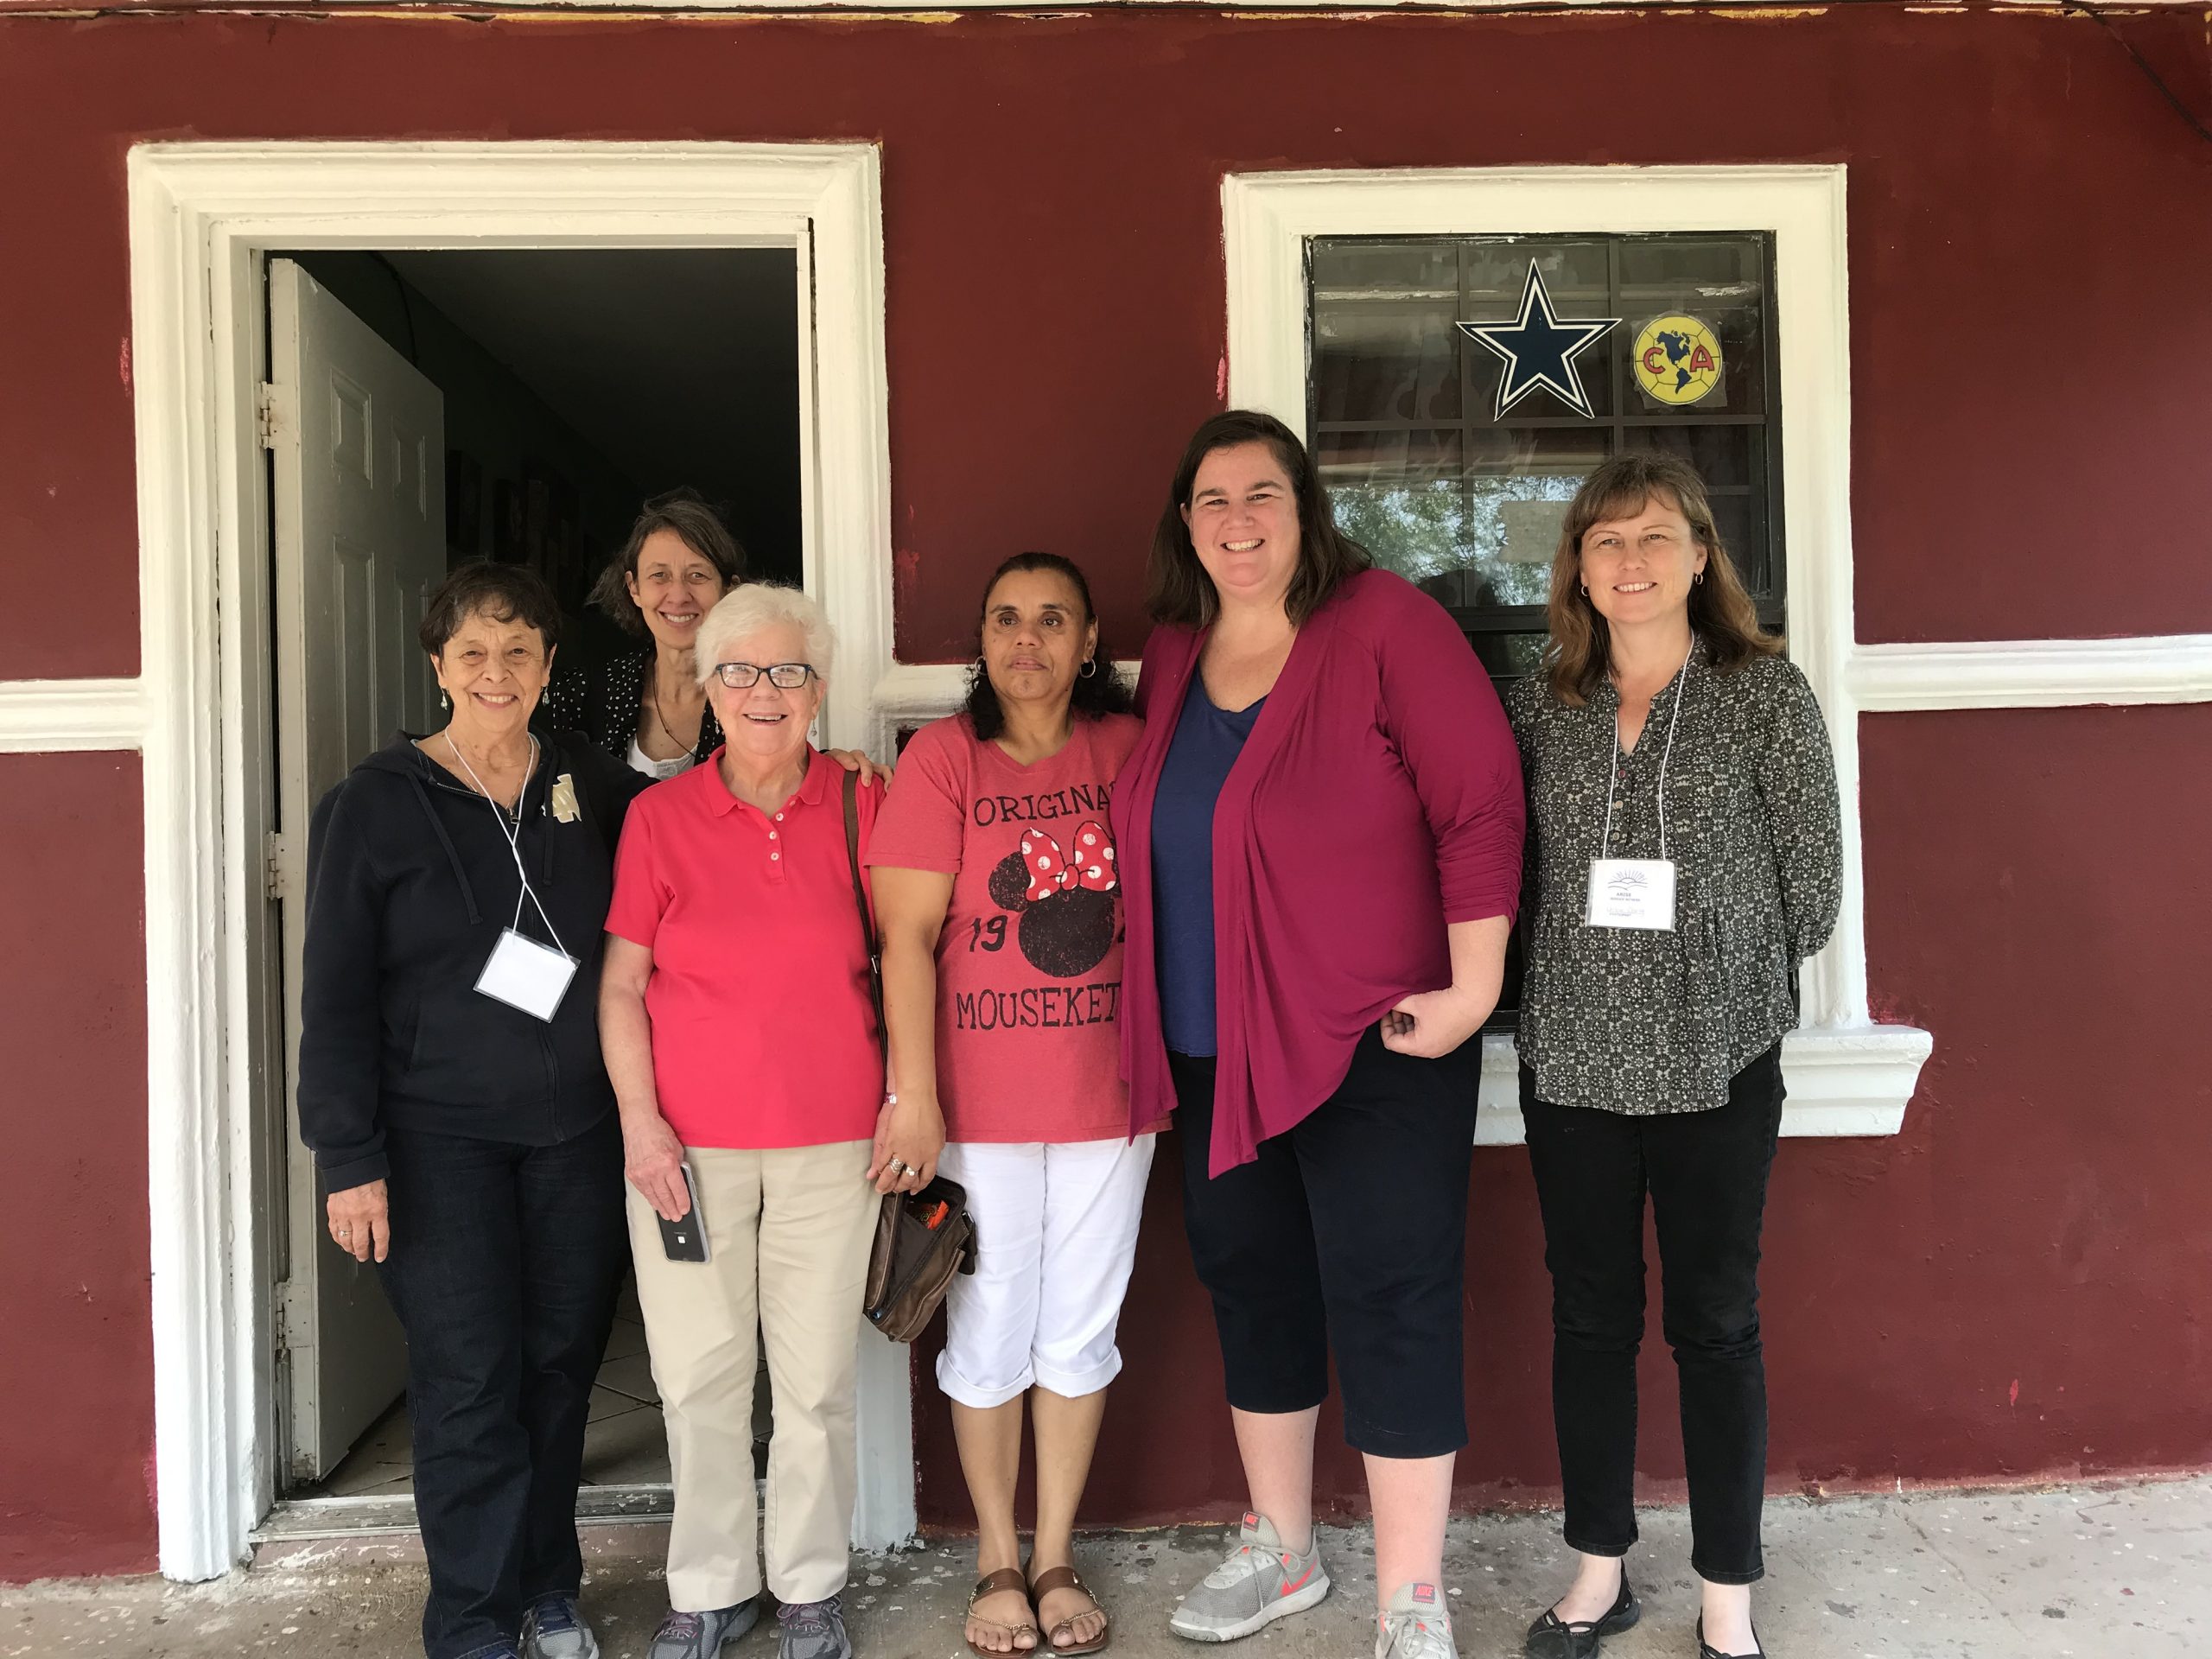 Hermana Marilyn Morgan, Jean Stokan, Hermana Joanne Whitaker, Manuela, Maggie Conley y Denise otra voluntaria, se reúnen frente a la puerta de la casa de Manuela en Alamo, Texas.